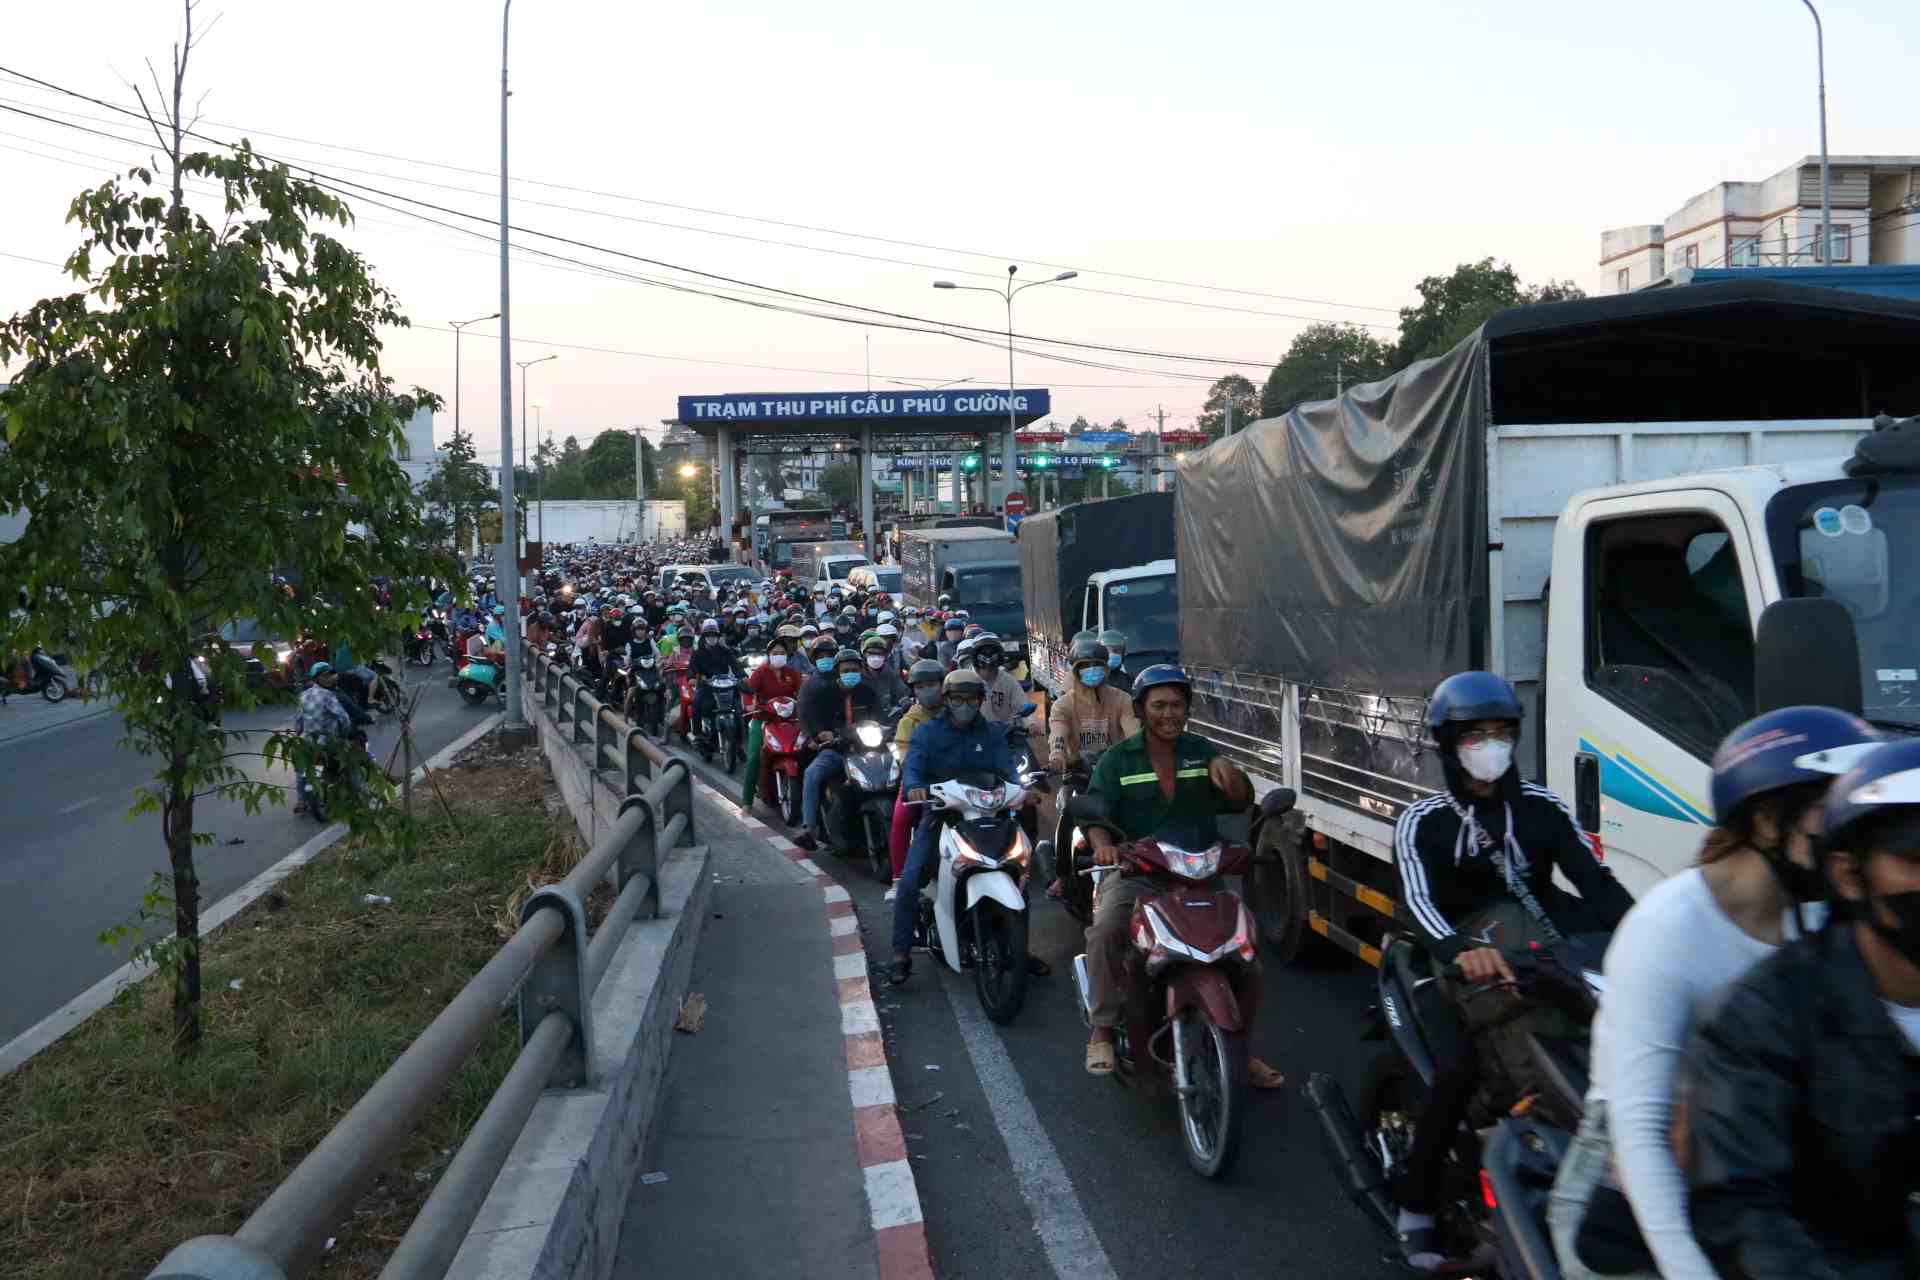 Ở vị trí trạm thu phí cầu Phú Cường, lượng phương tiện đổ về quá lớn, trạm thu phí lại án ngữ ngay đầu cầu khiến giao thông quá tải.